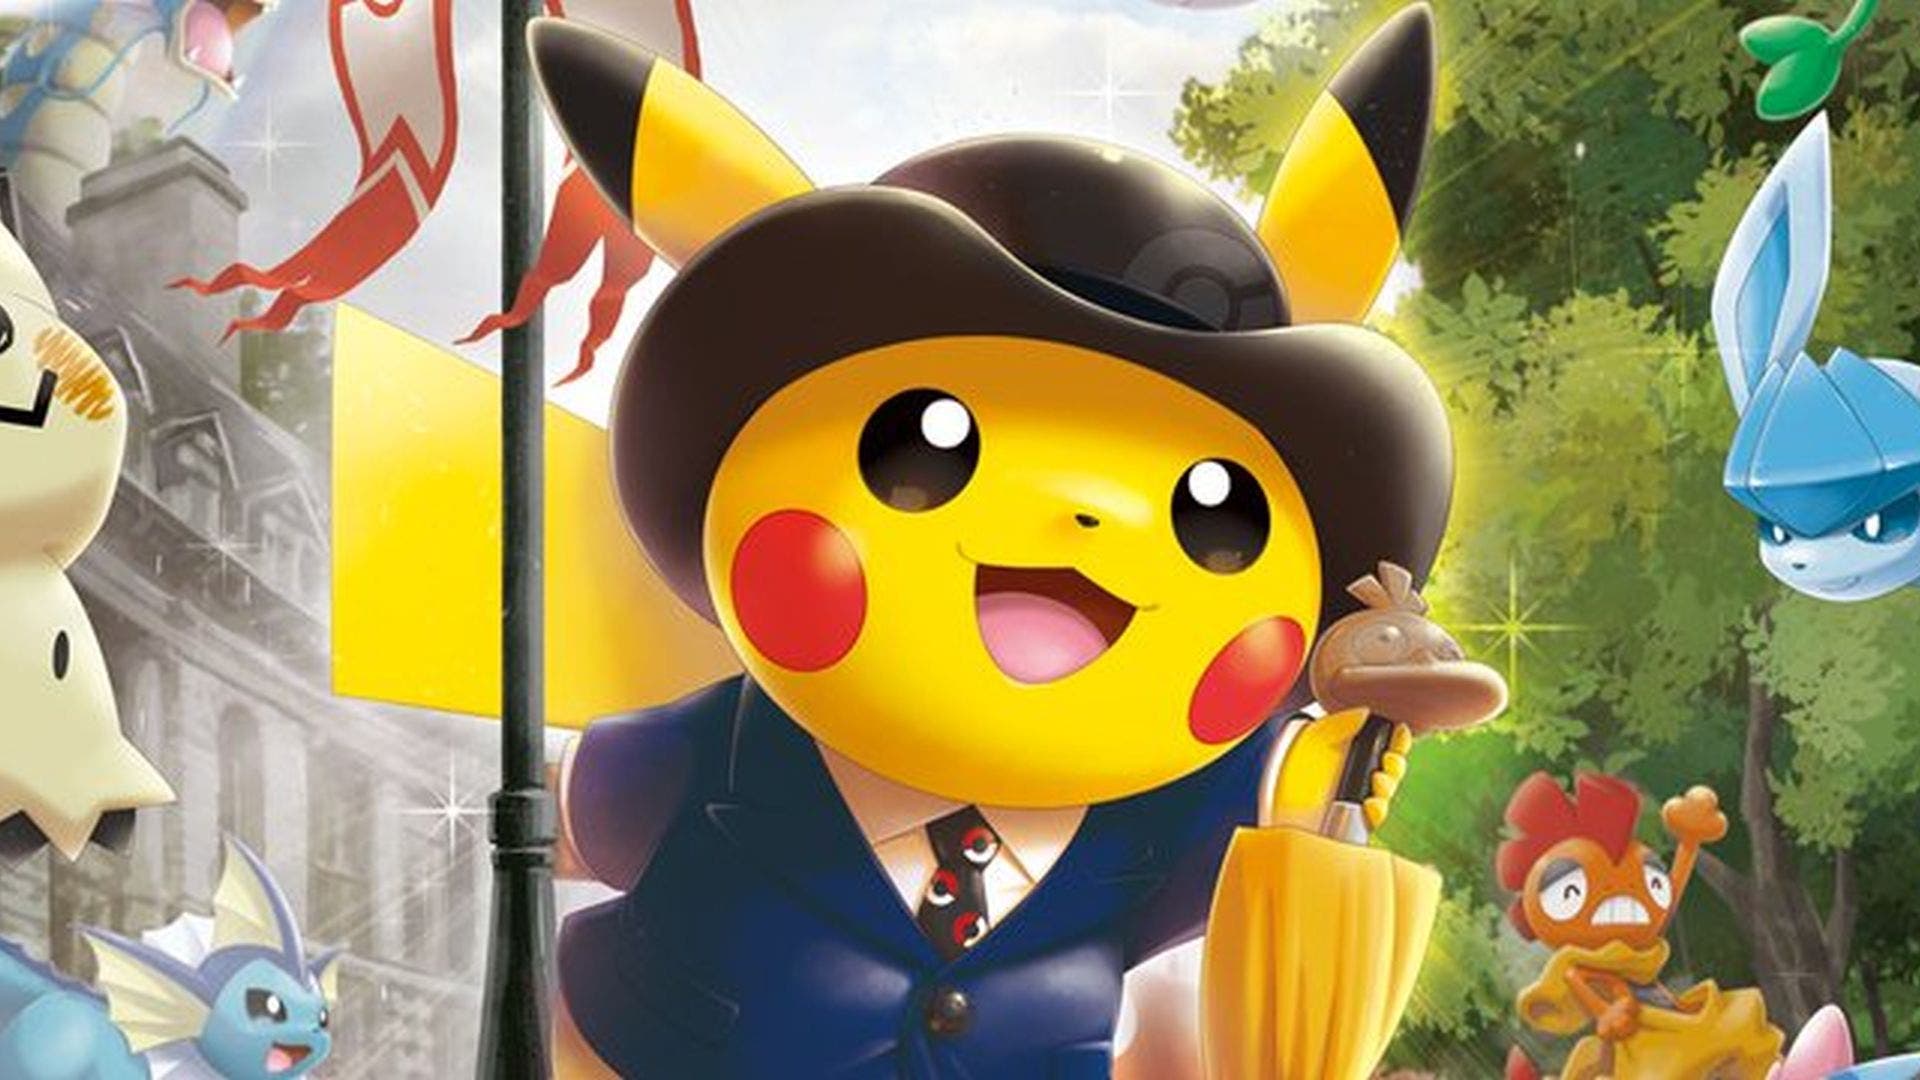 Se encuentran más indicios de la pronta llegada de un Pokémon Center oficial a Europa